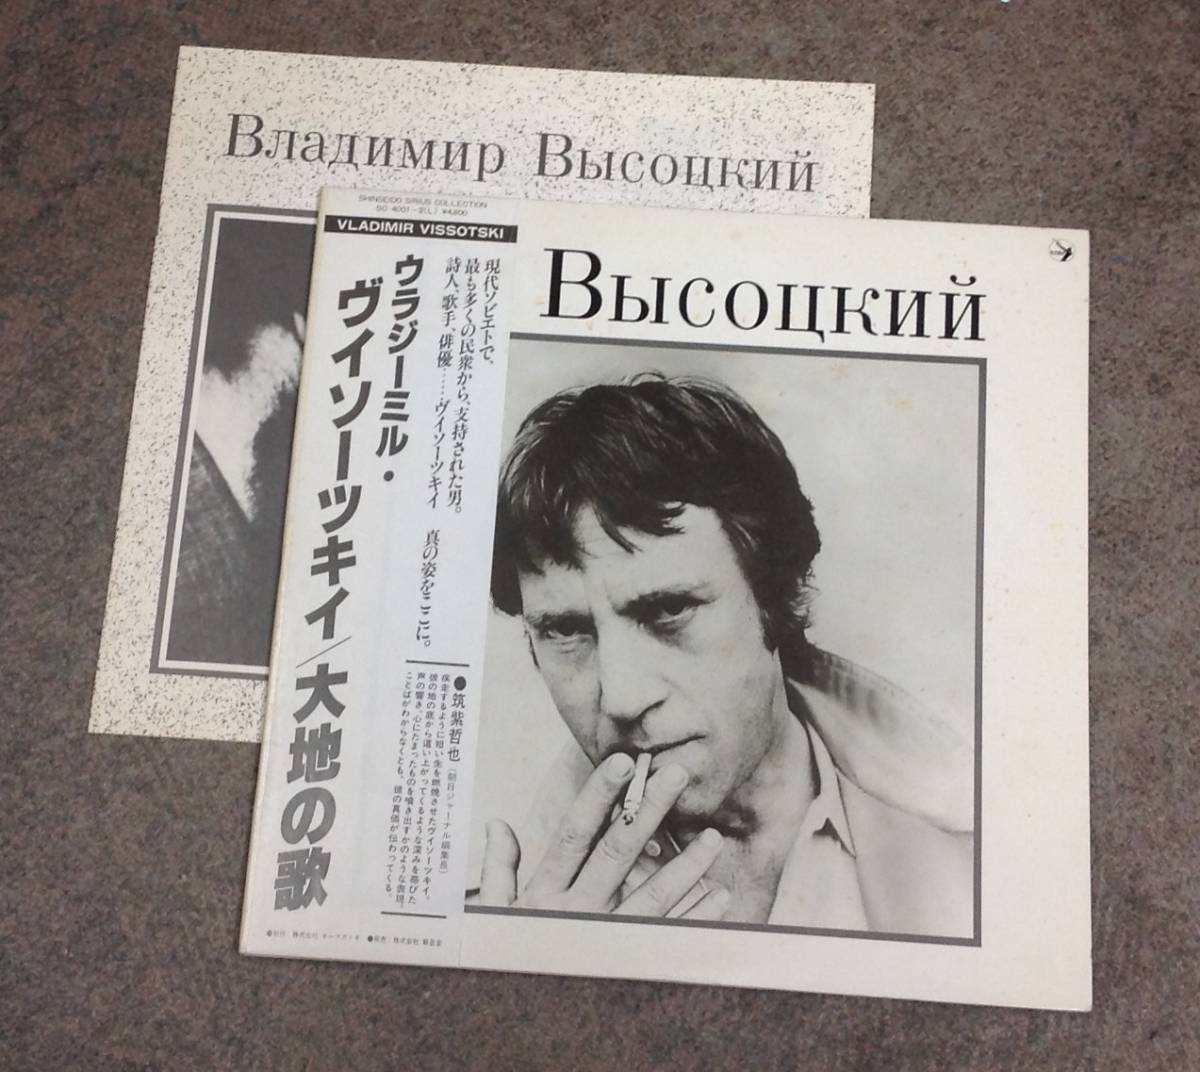 Vladimir Vissotski 2 lps album , Japan press